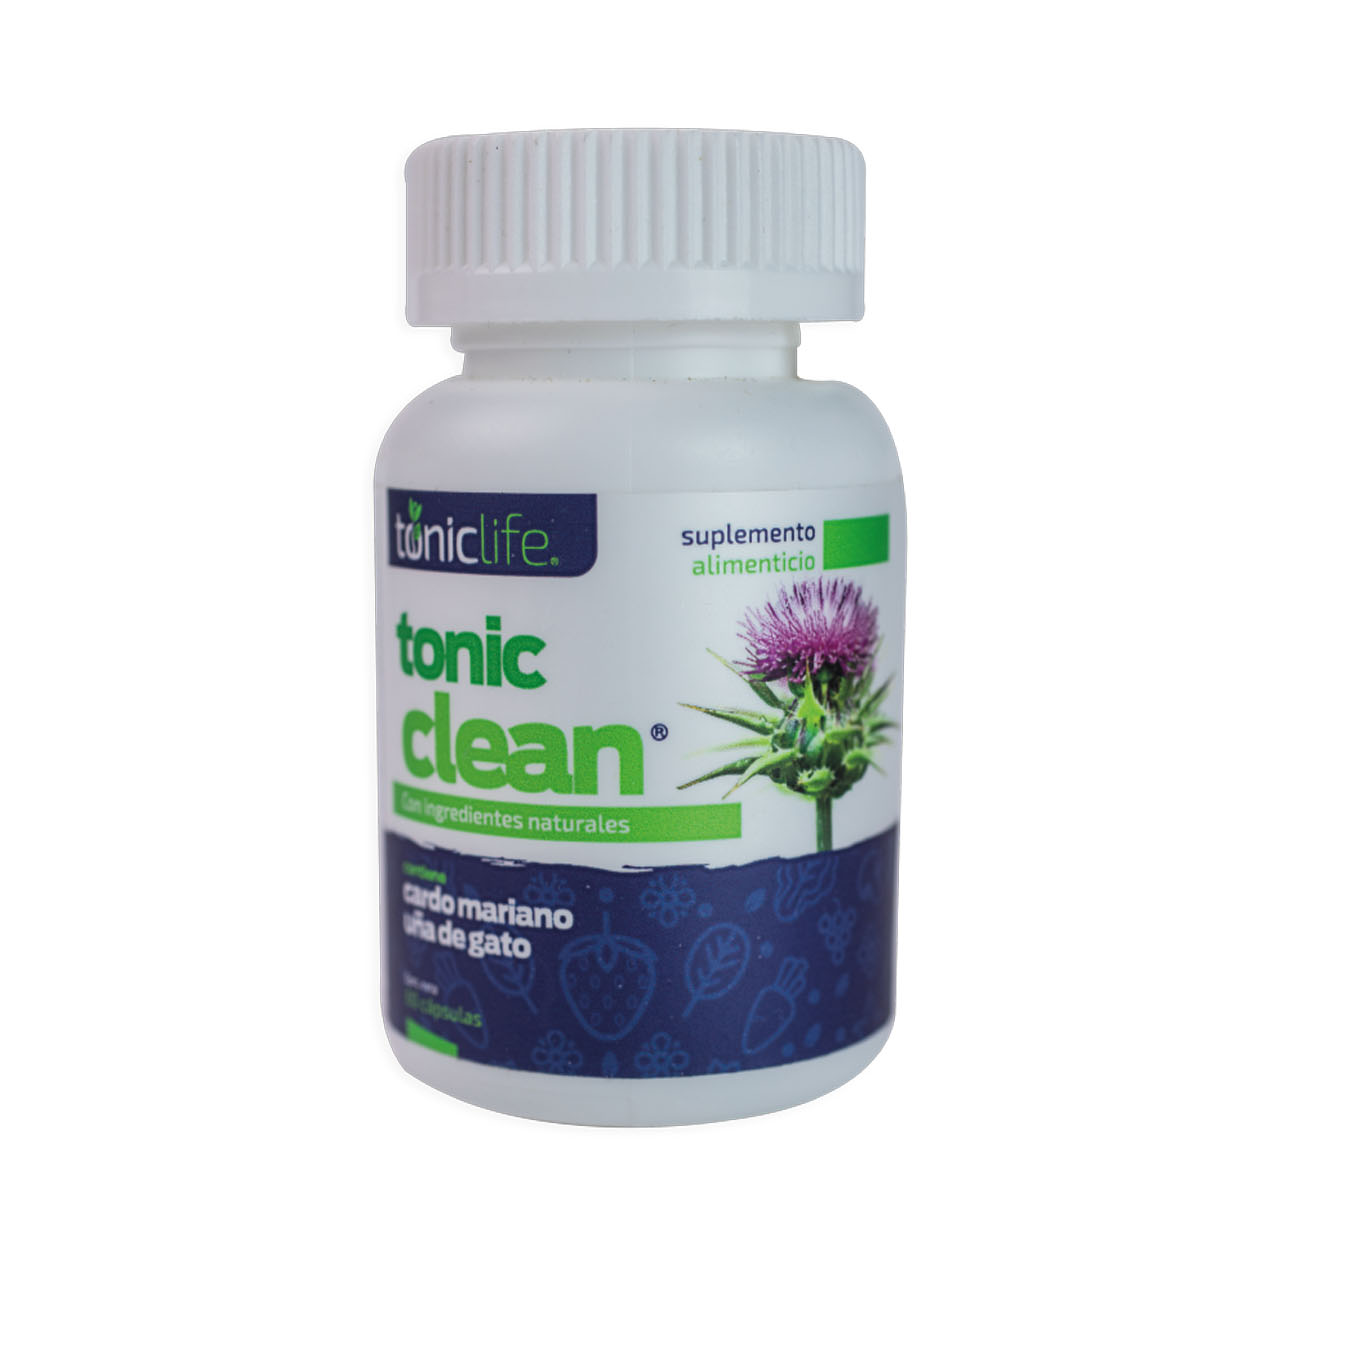 Tonic Clean capsules